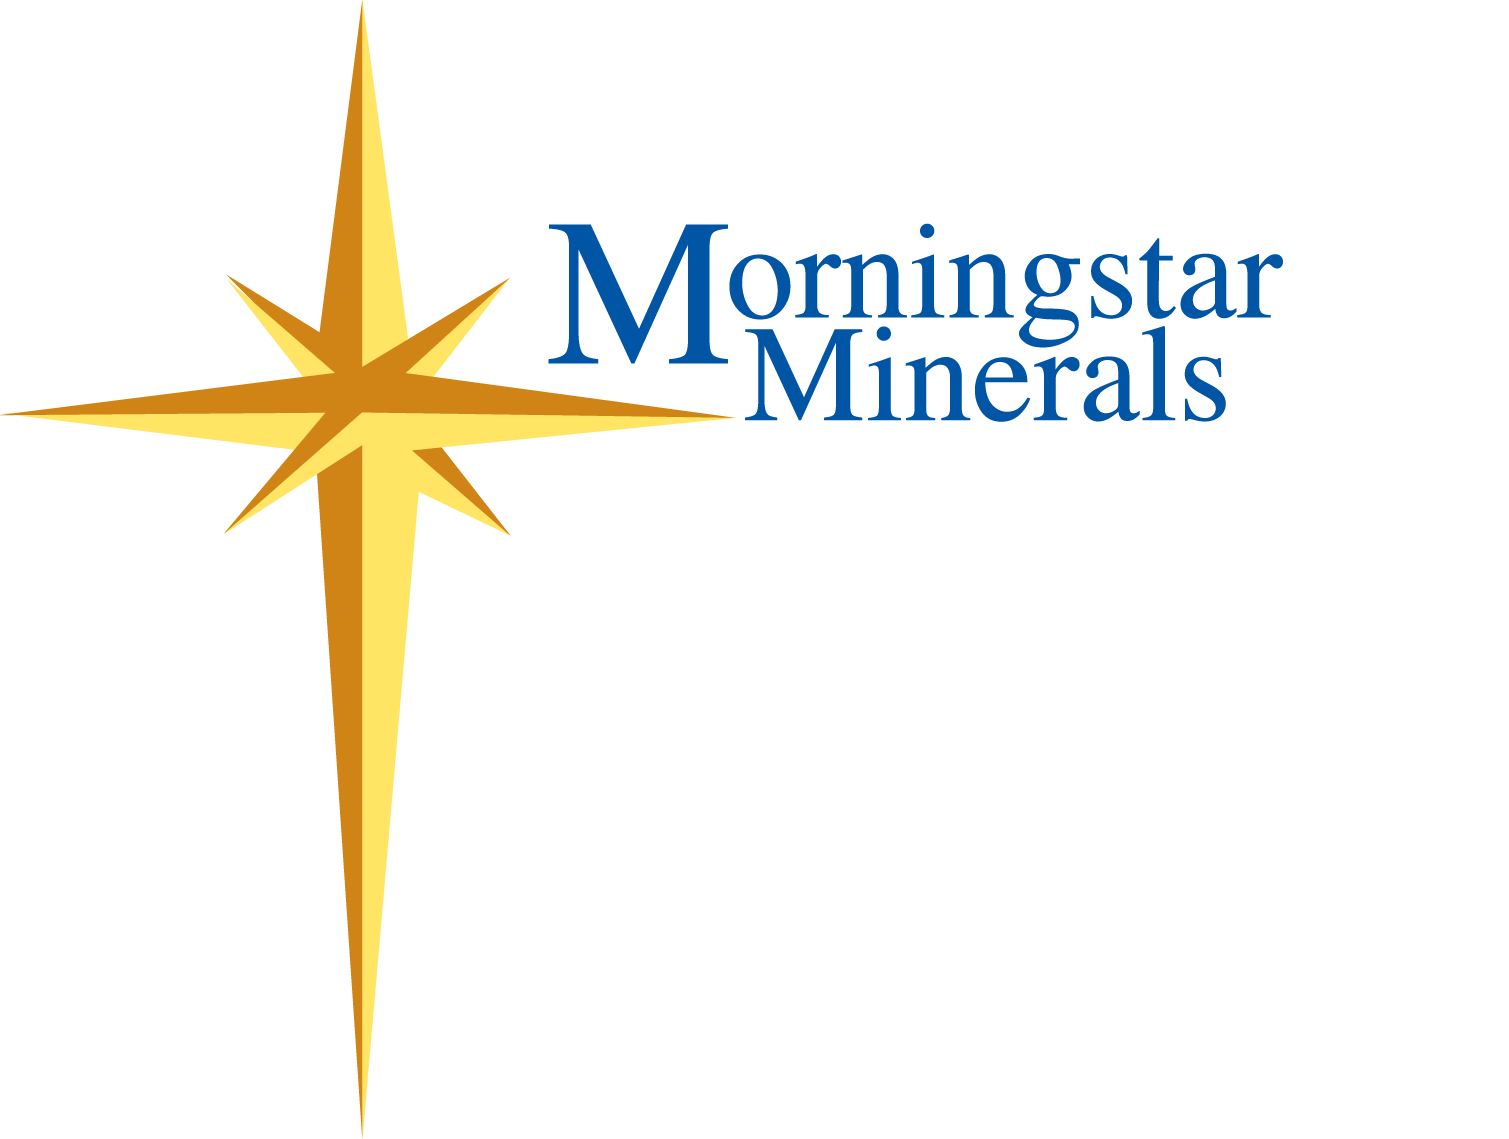 Morningstar Minerals